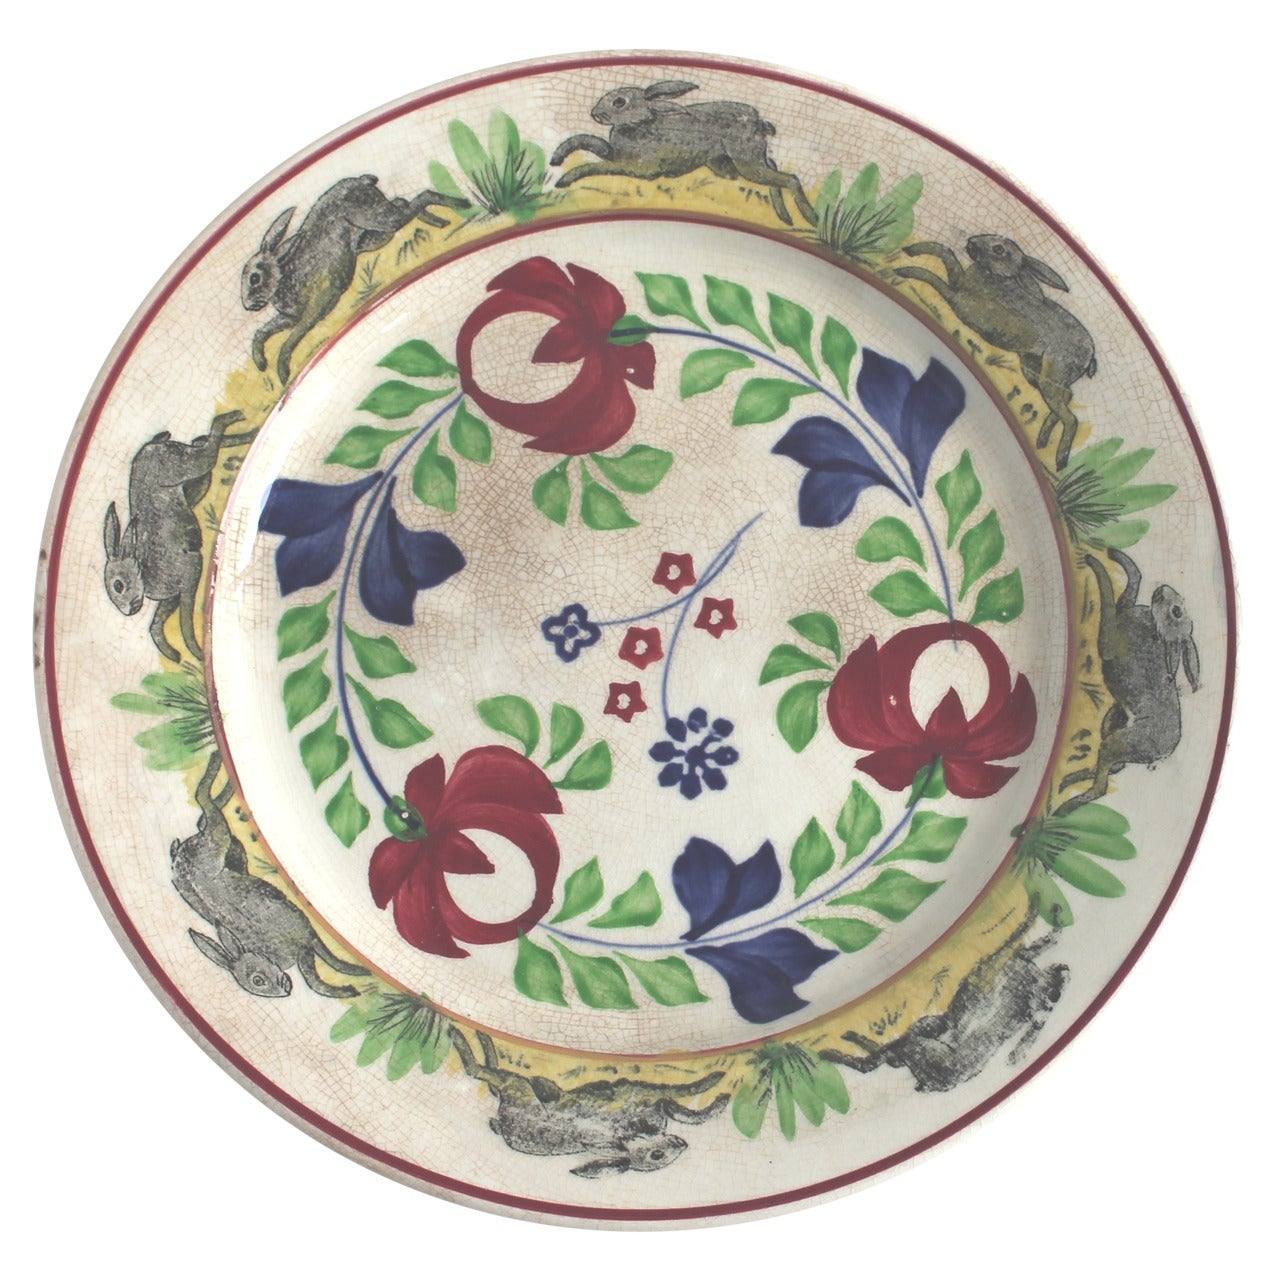 Rare assiette à mouchetures peinte à la main du XIXe siècle avec lapins